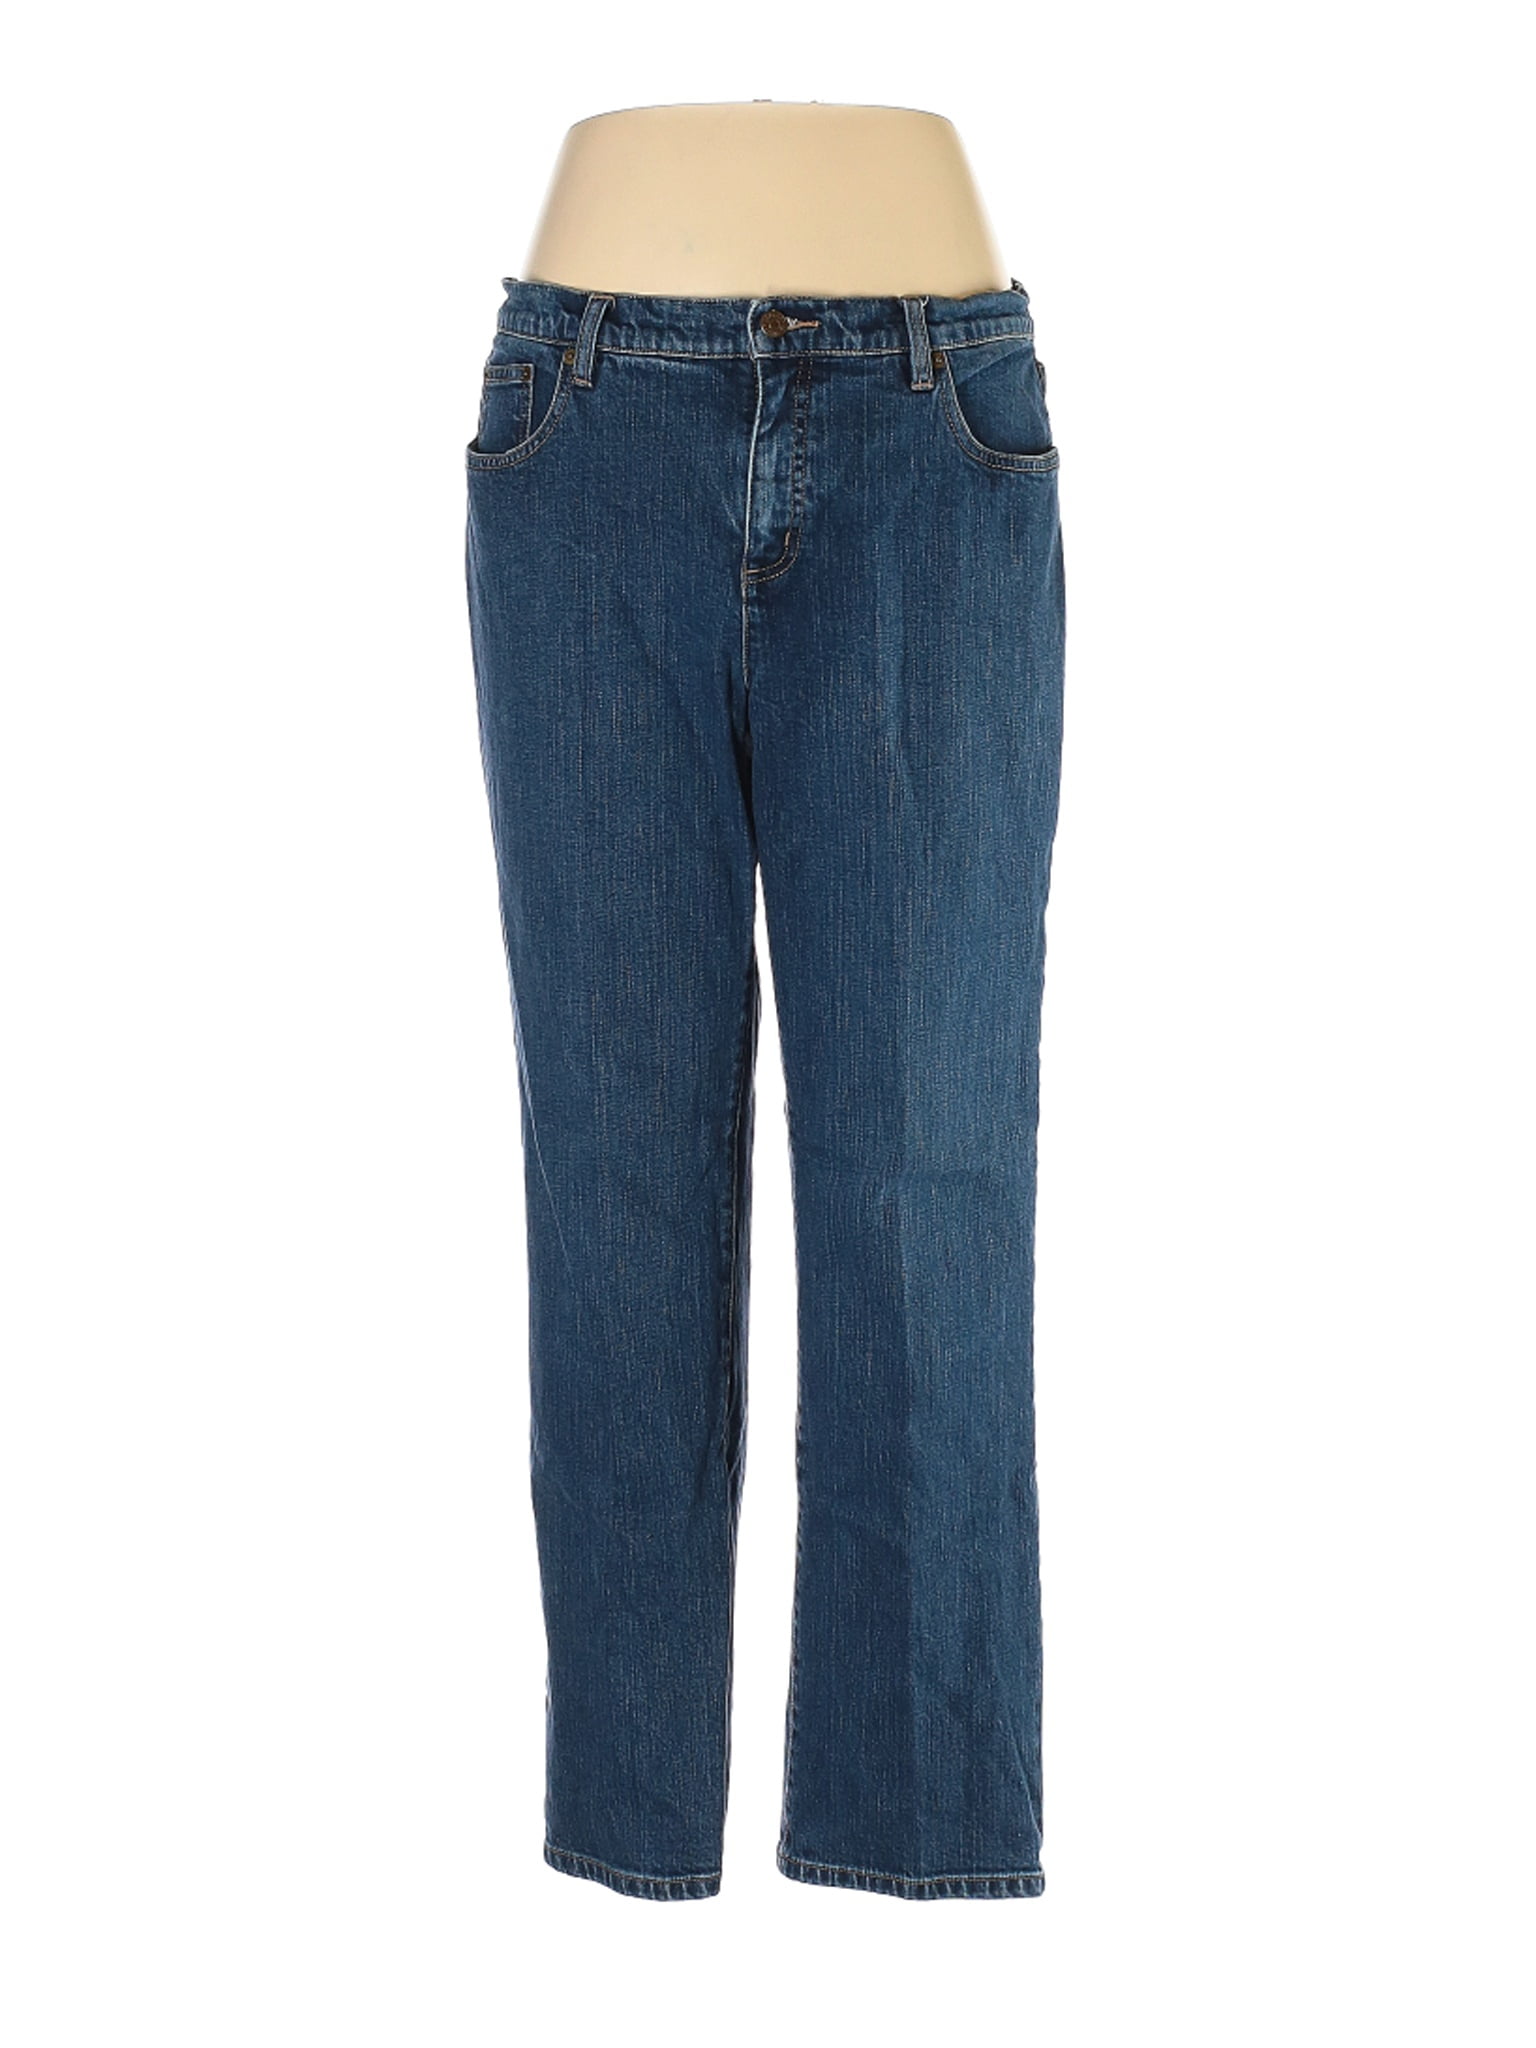 Lauren Jeans Co. - Pre-Owned Lauren Jeans Co. Women's Size 16 Jeans ...